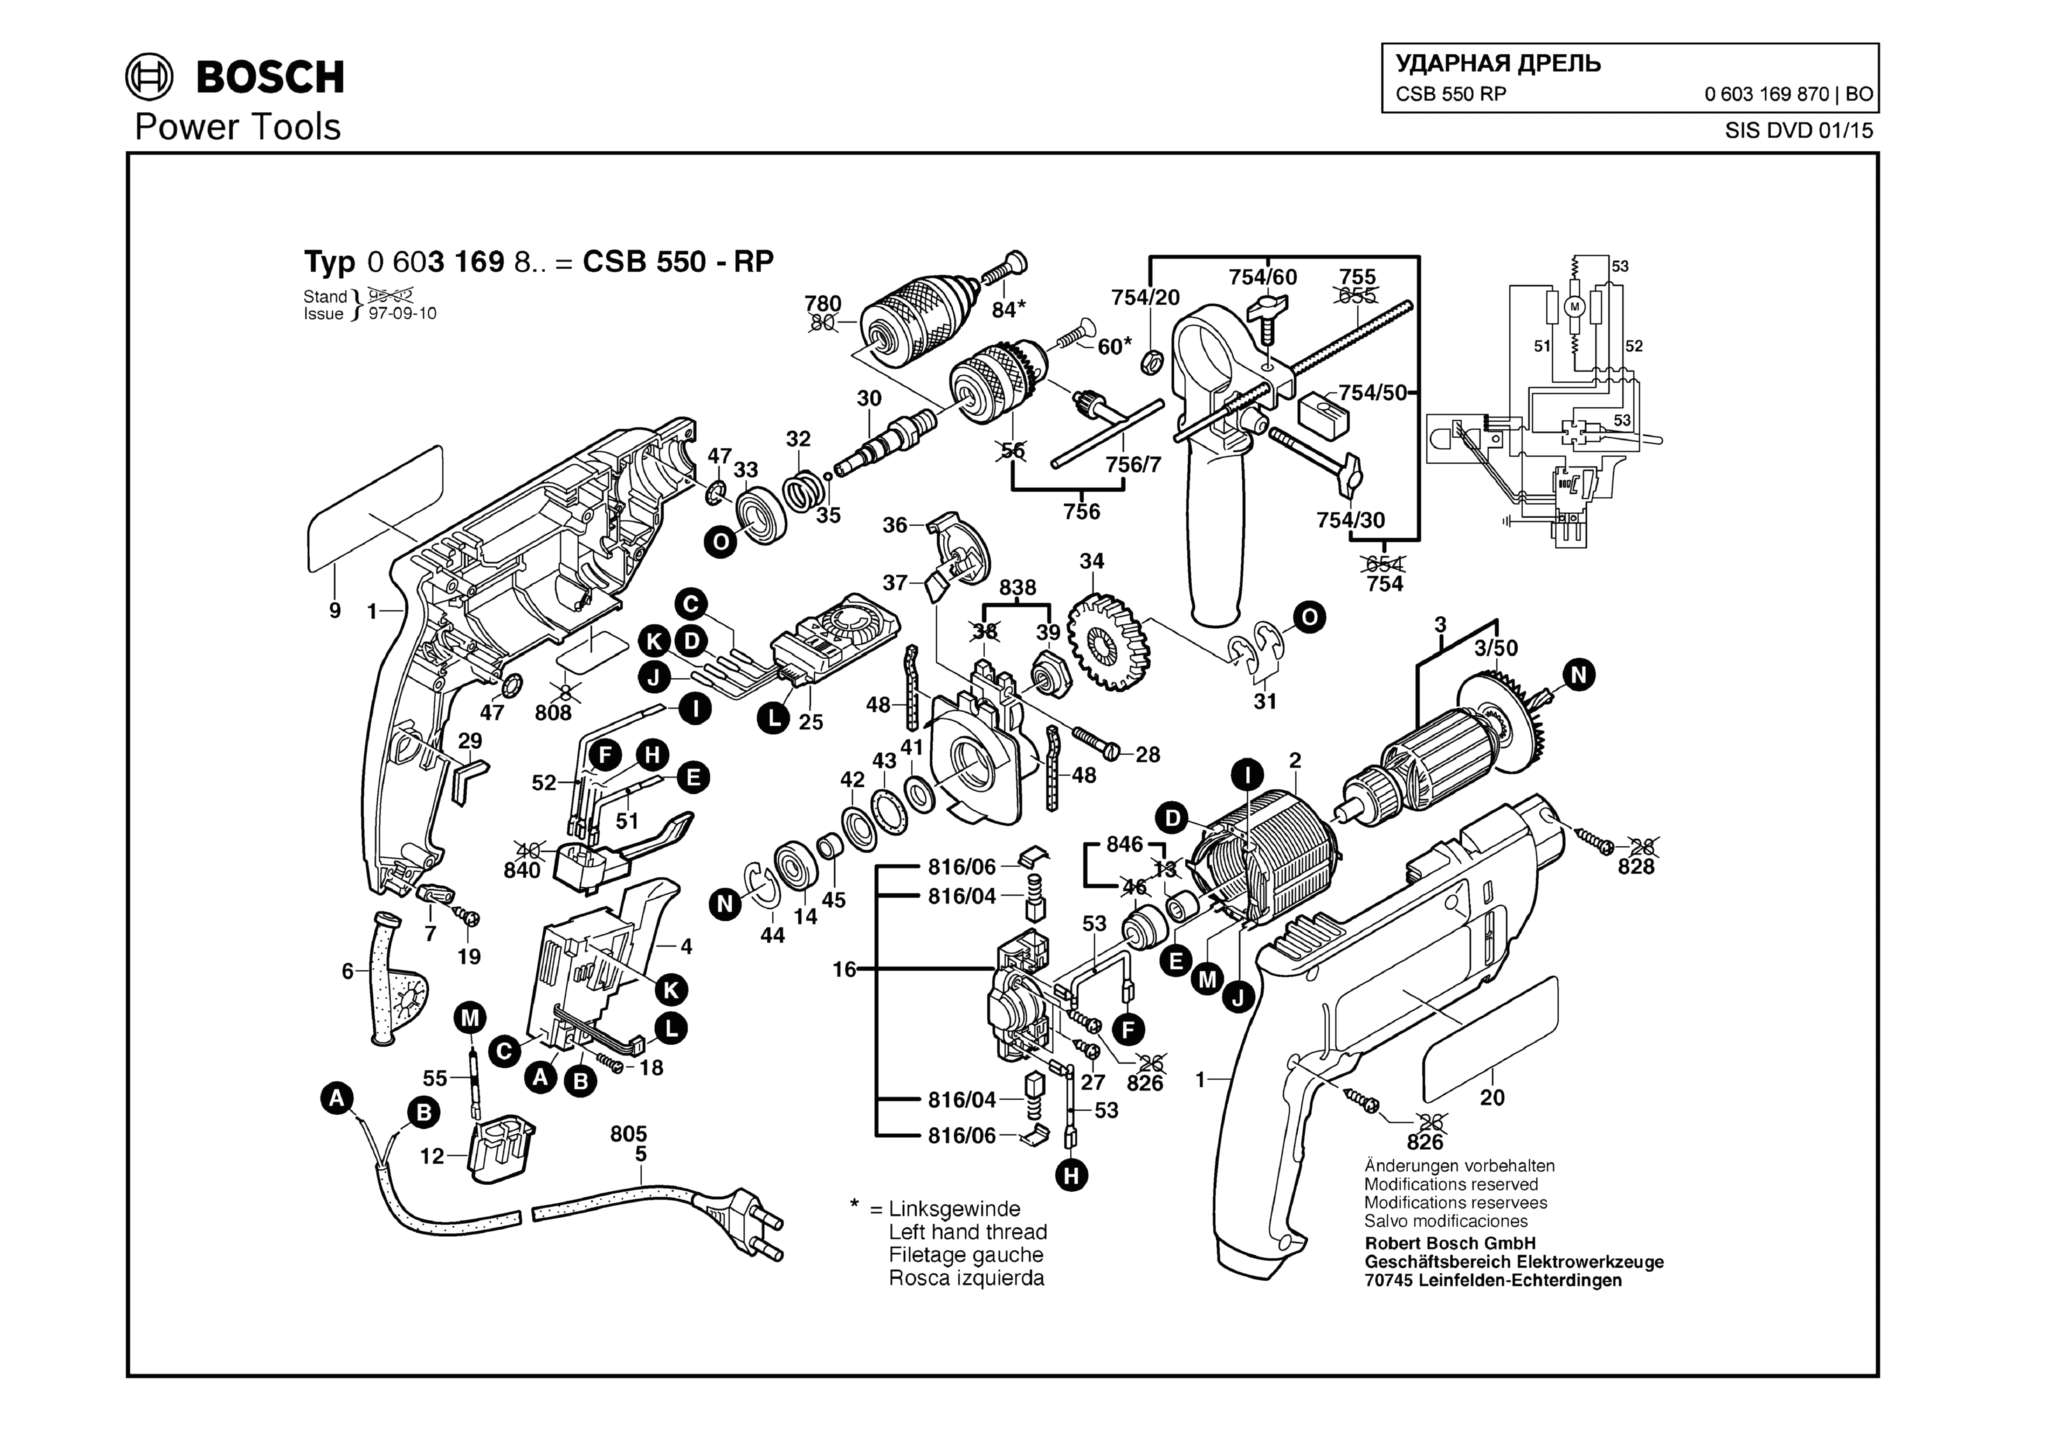 Запчасти, схема и деталировка Bosch CSB 550 RP (ТИП 0603169870)